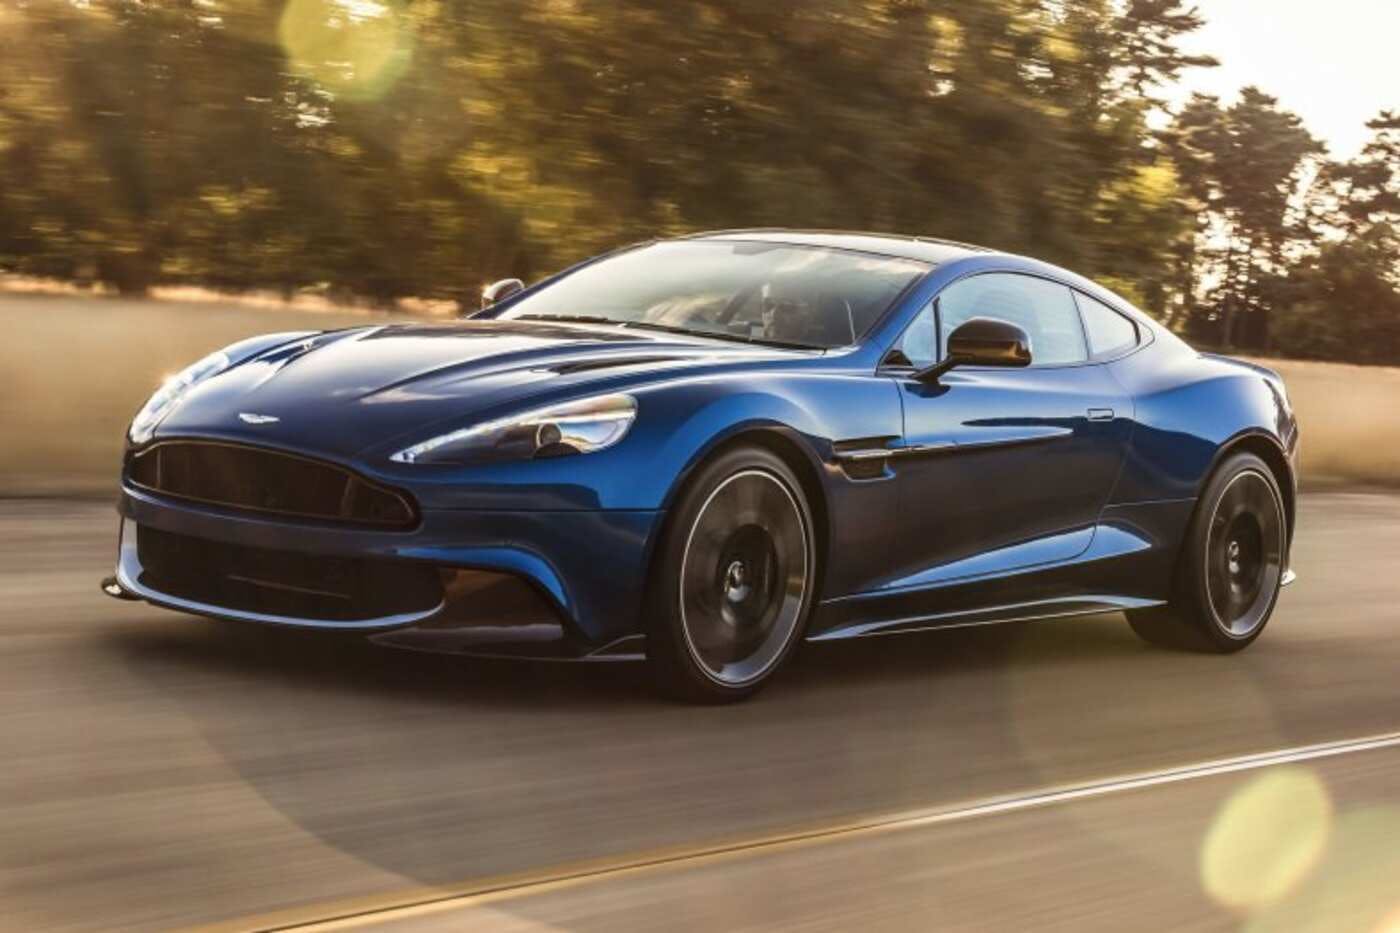 2019 Aston Martin Vanquish Comparisons Reviews Pictures